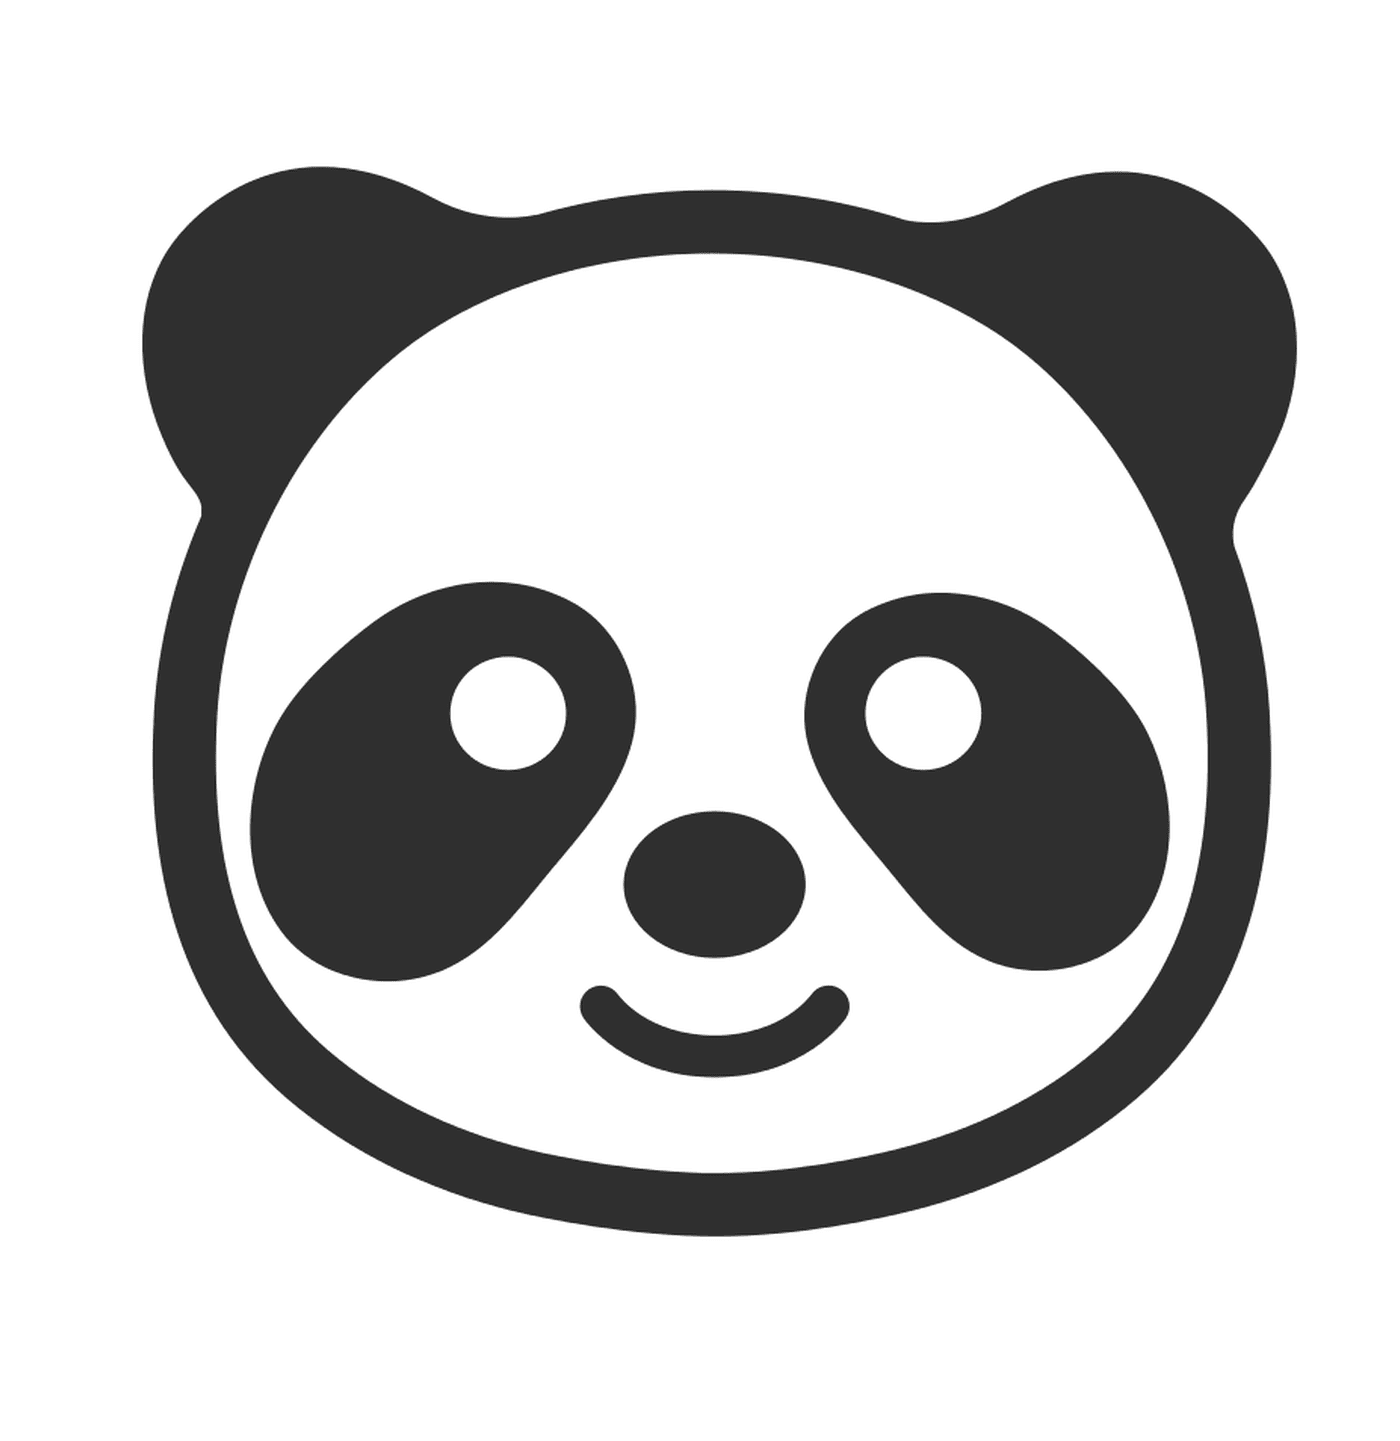  पांडा 